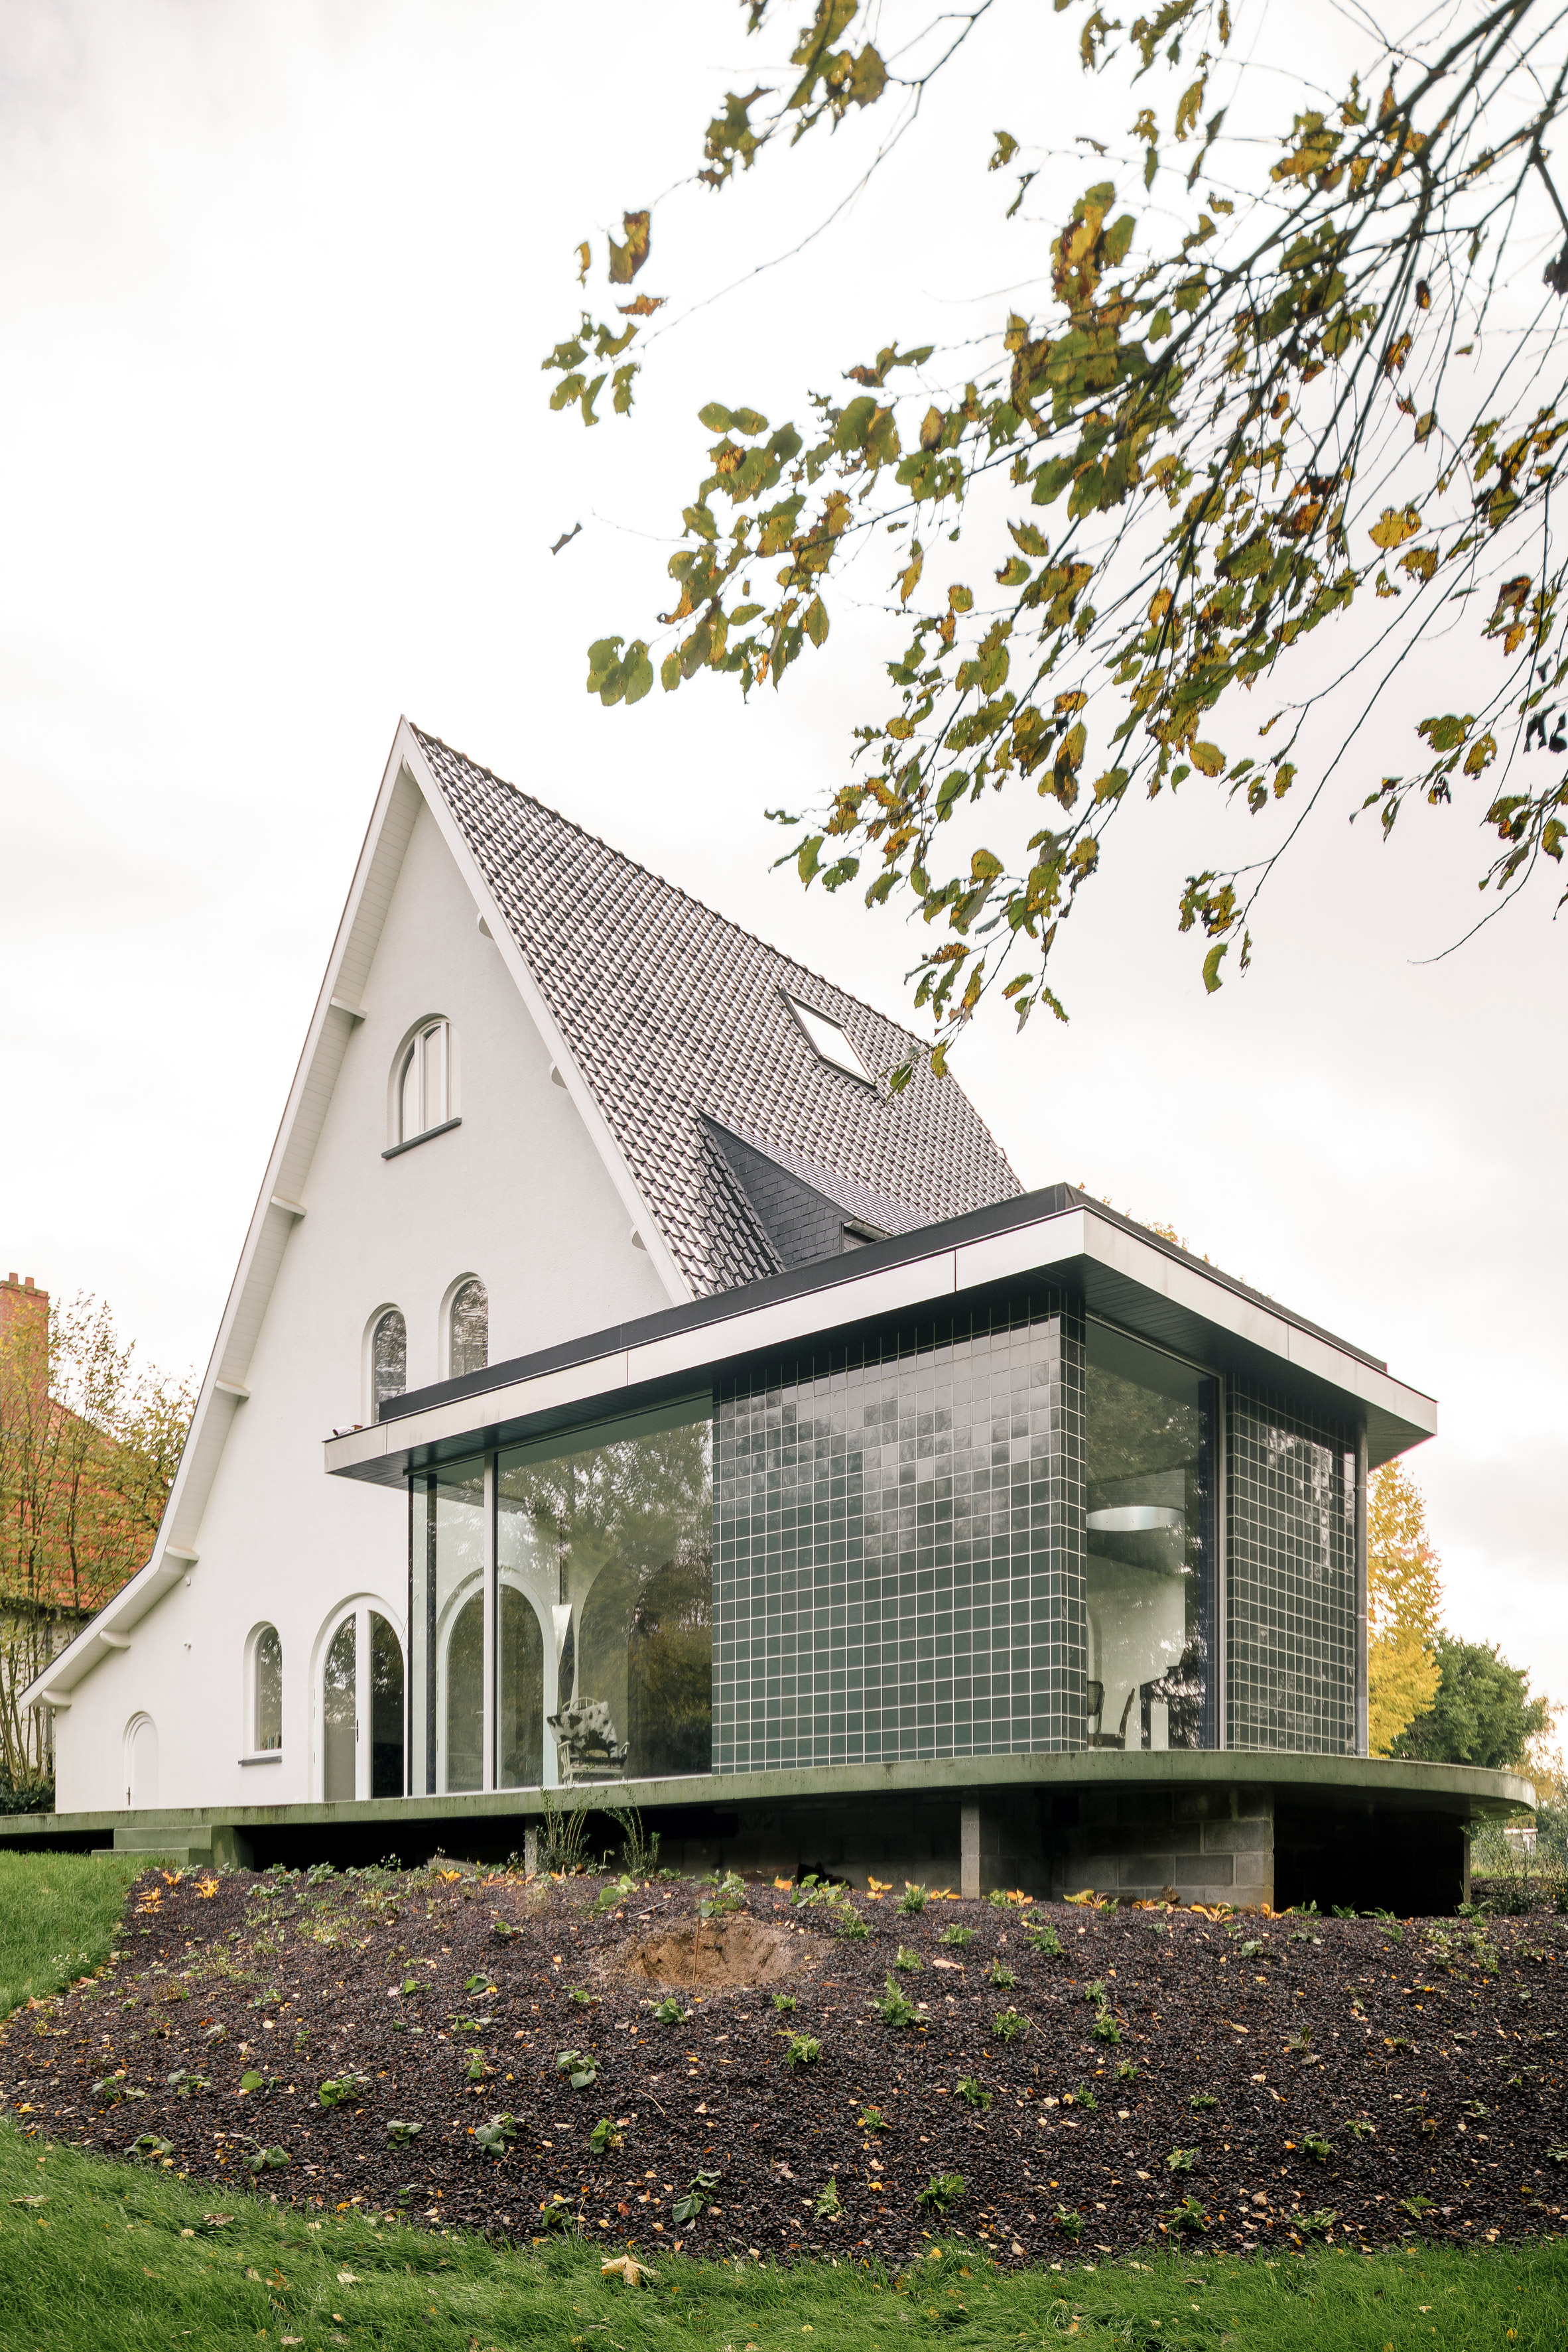 建筑师夫人栖息在弯曲的混凝土露台上的绿色瓷砖房屋扩建部分|ART-Arrakis | 建筑室内设计的创新与灵感